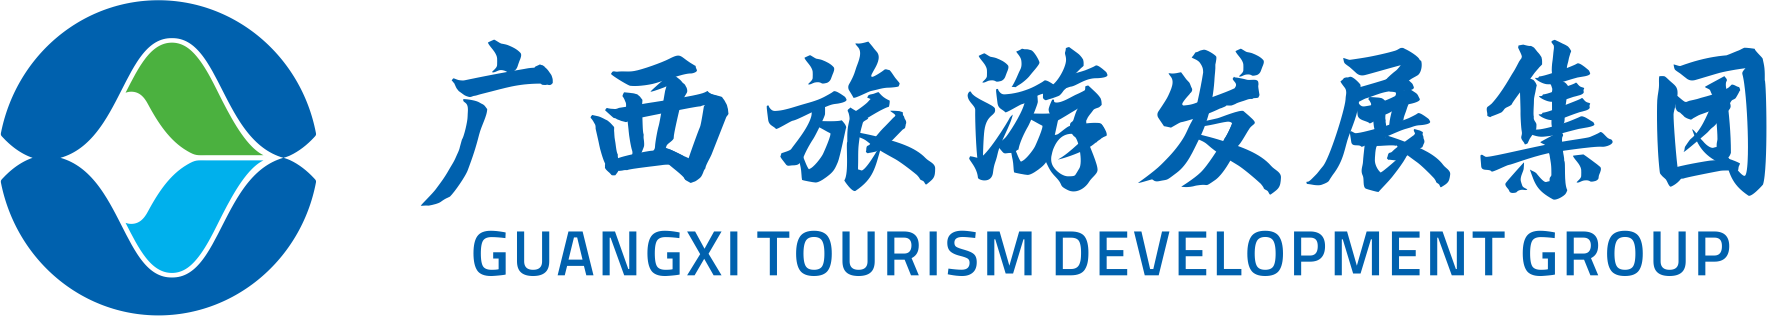 广西旅游发展集团